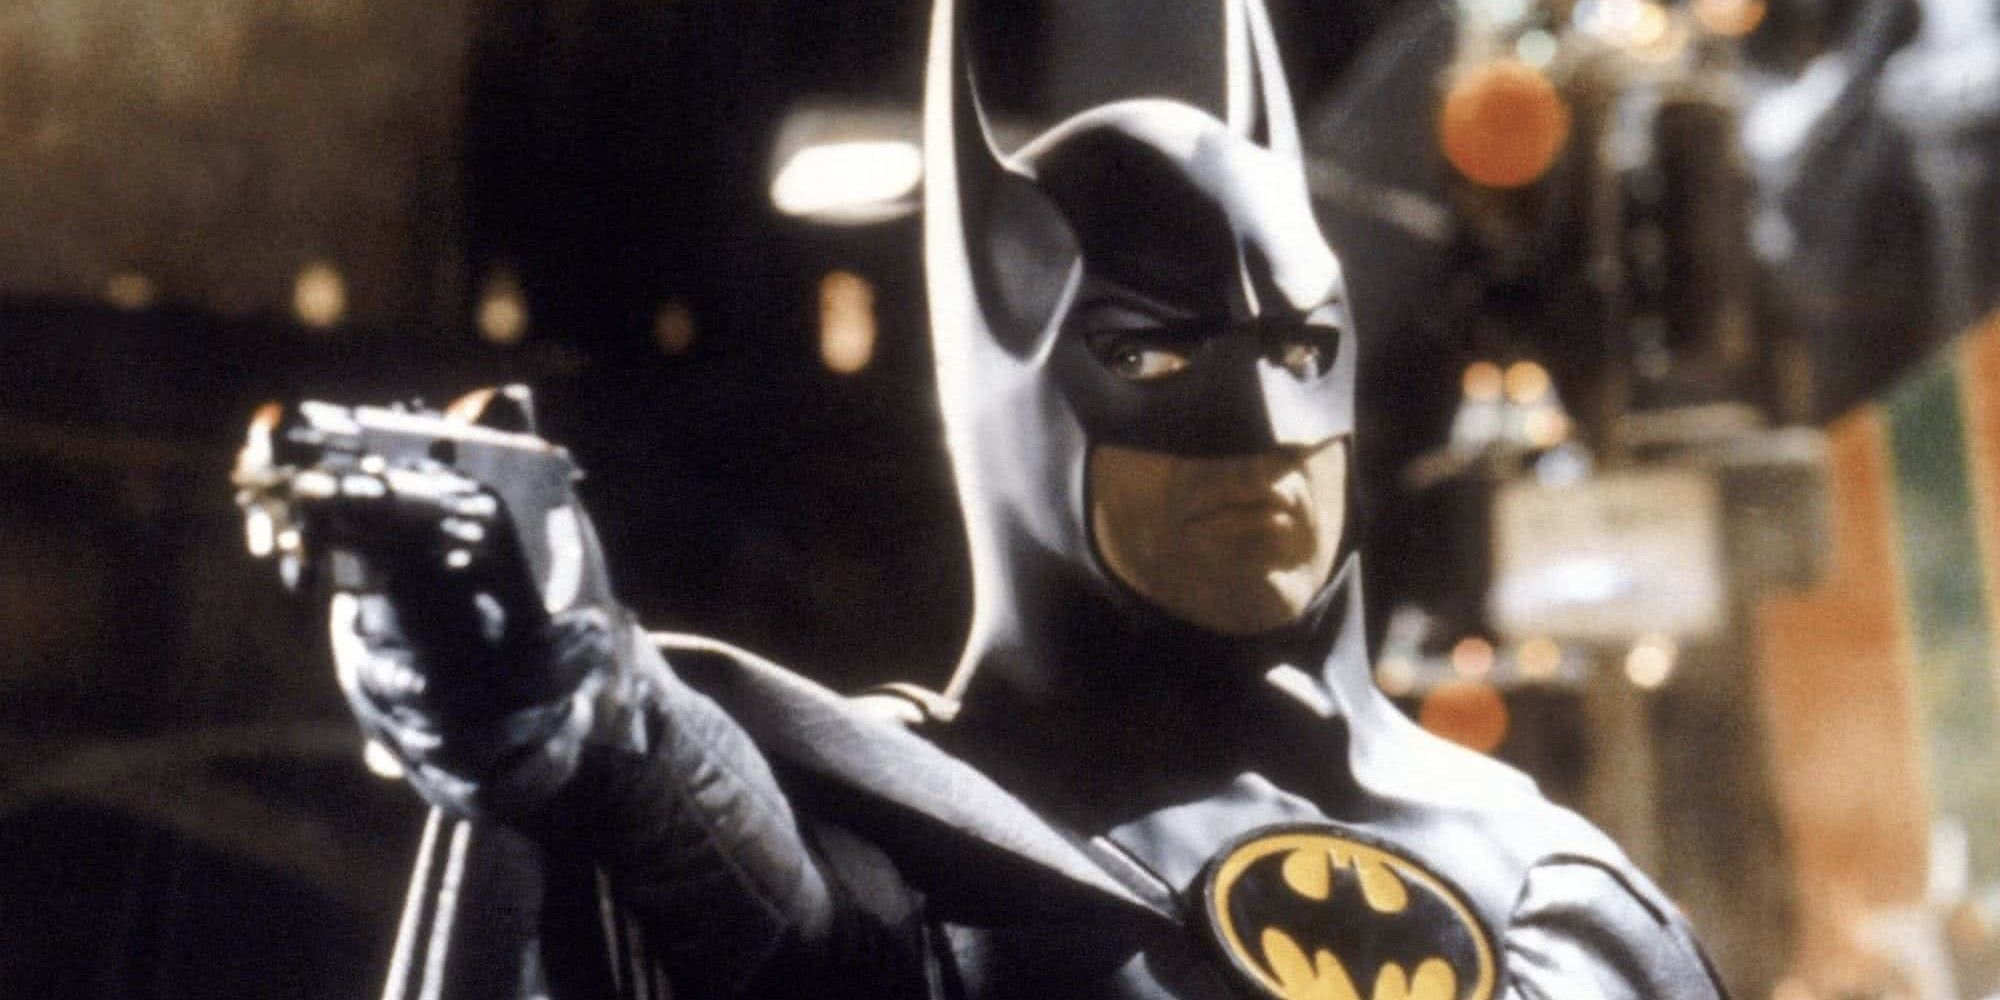 Michael Keaton points a gun in Batman